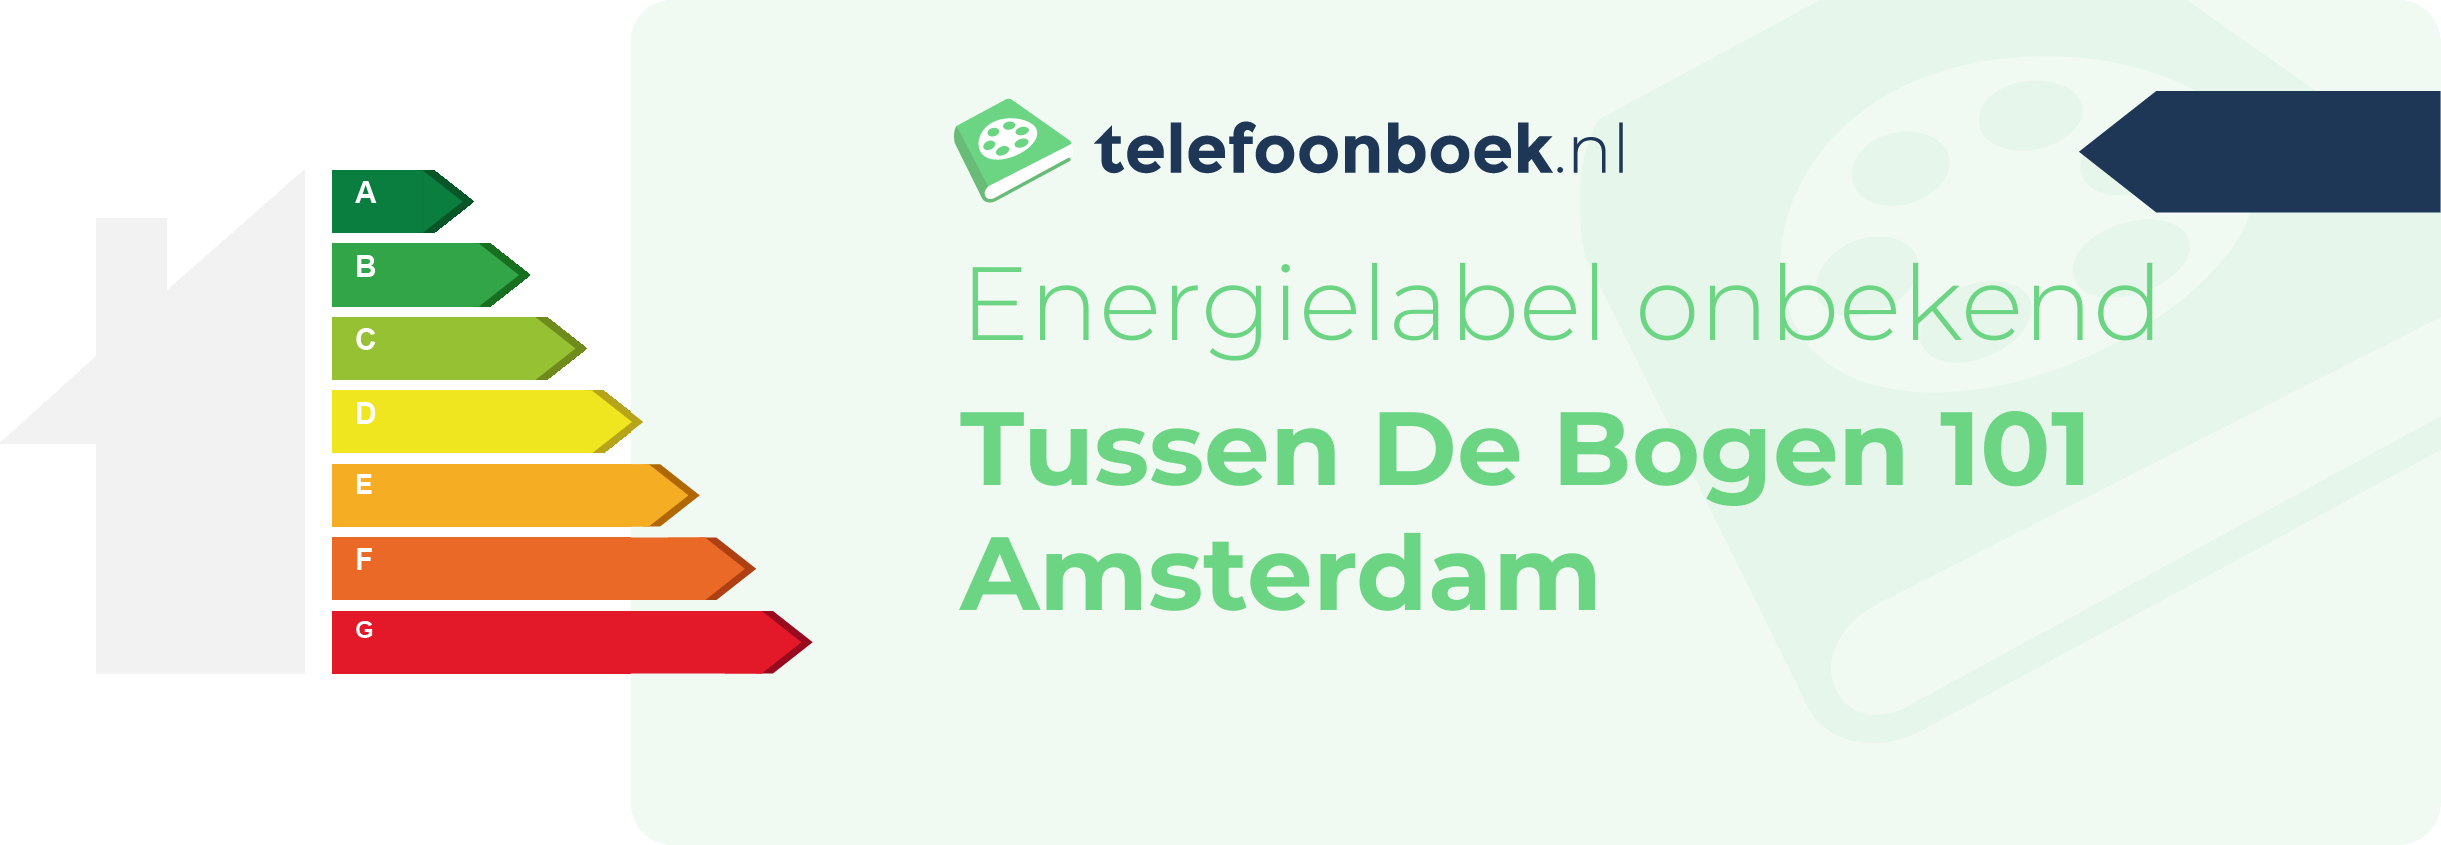 Energielabel Tussen De Bogen 101 Amsterdam